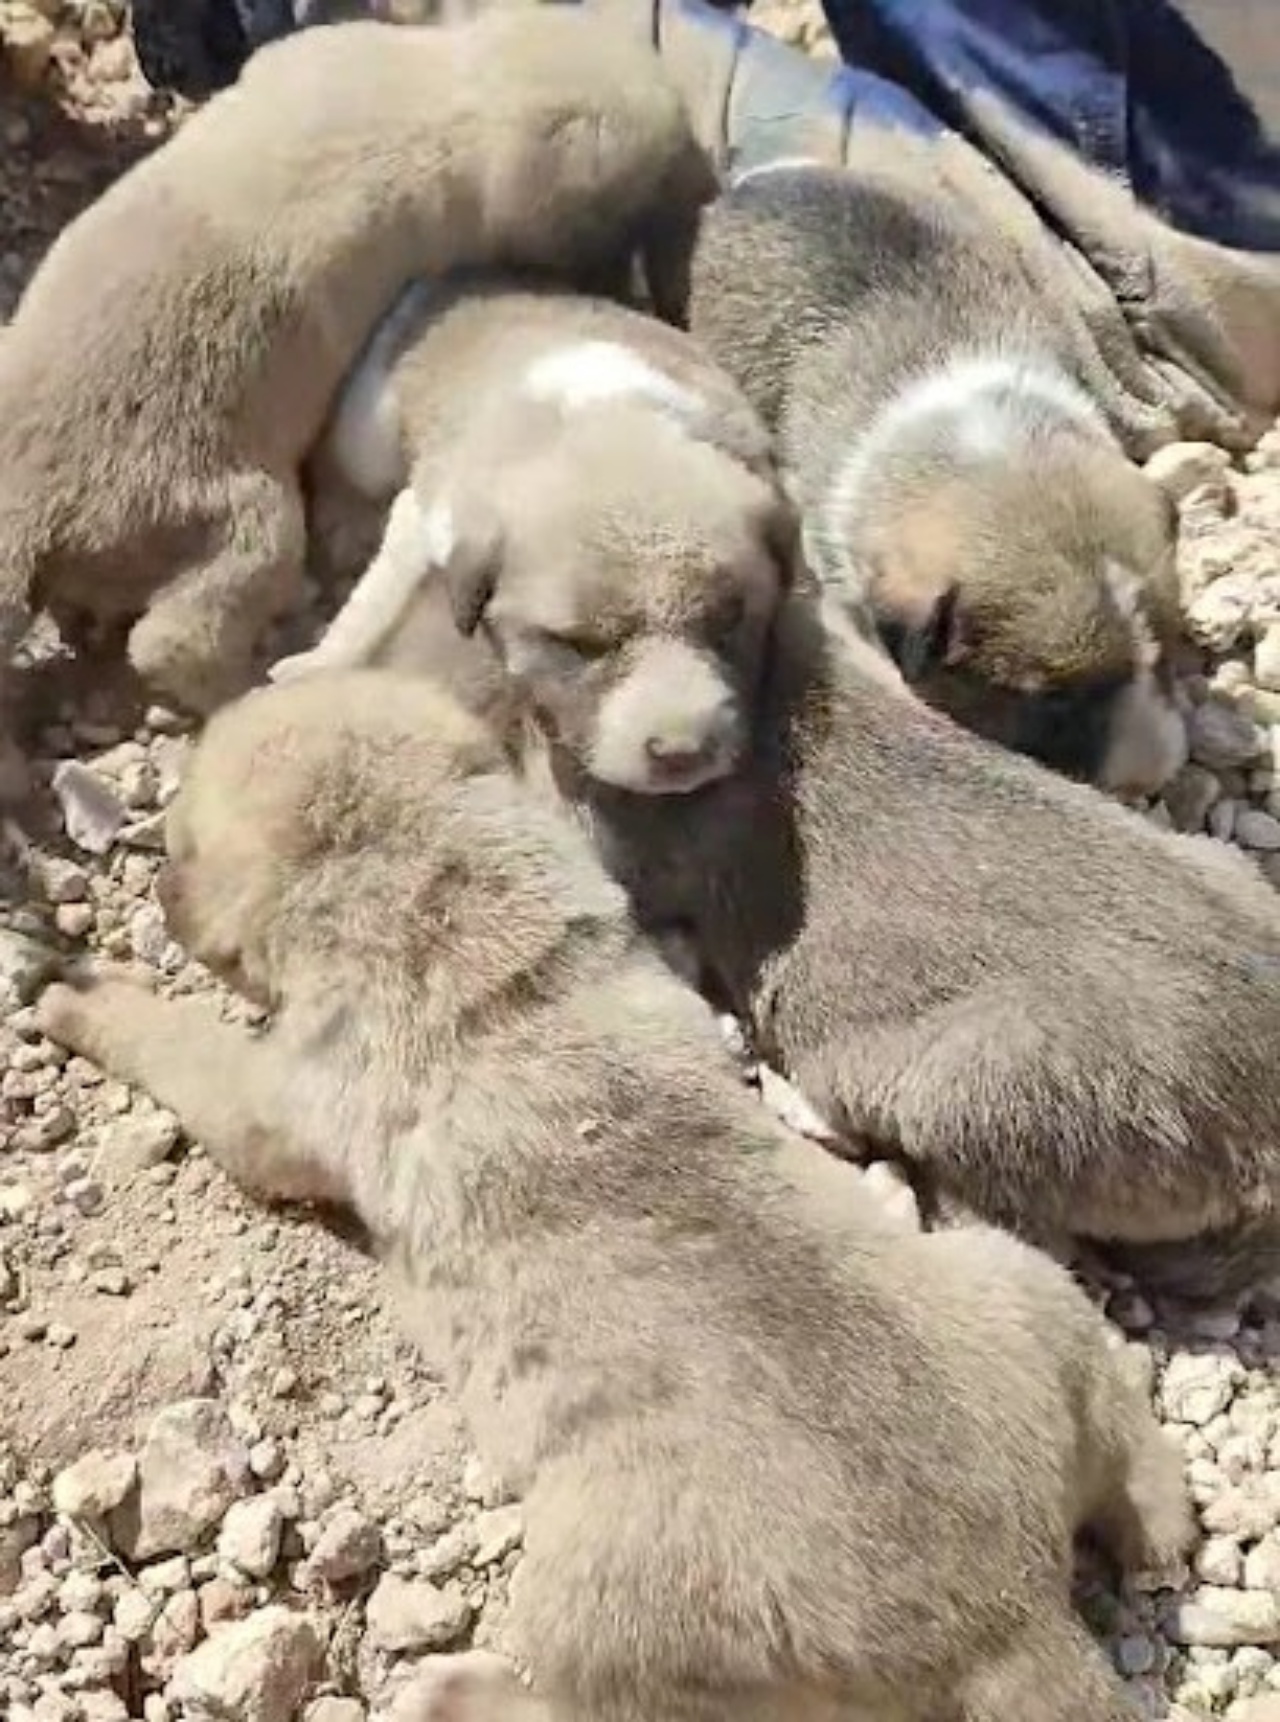 Madre salva i suoi cuccioli ululando per richiamare l'attenzione di qualcuno